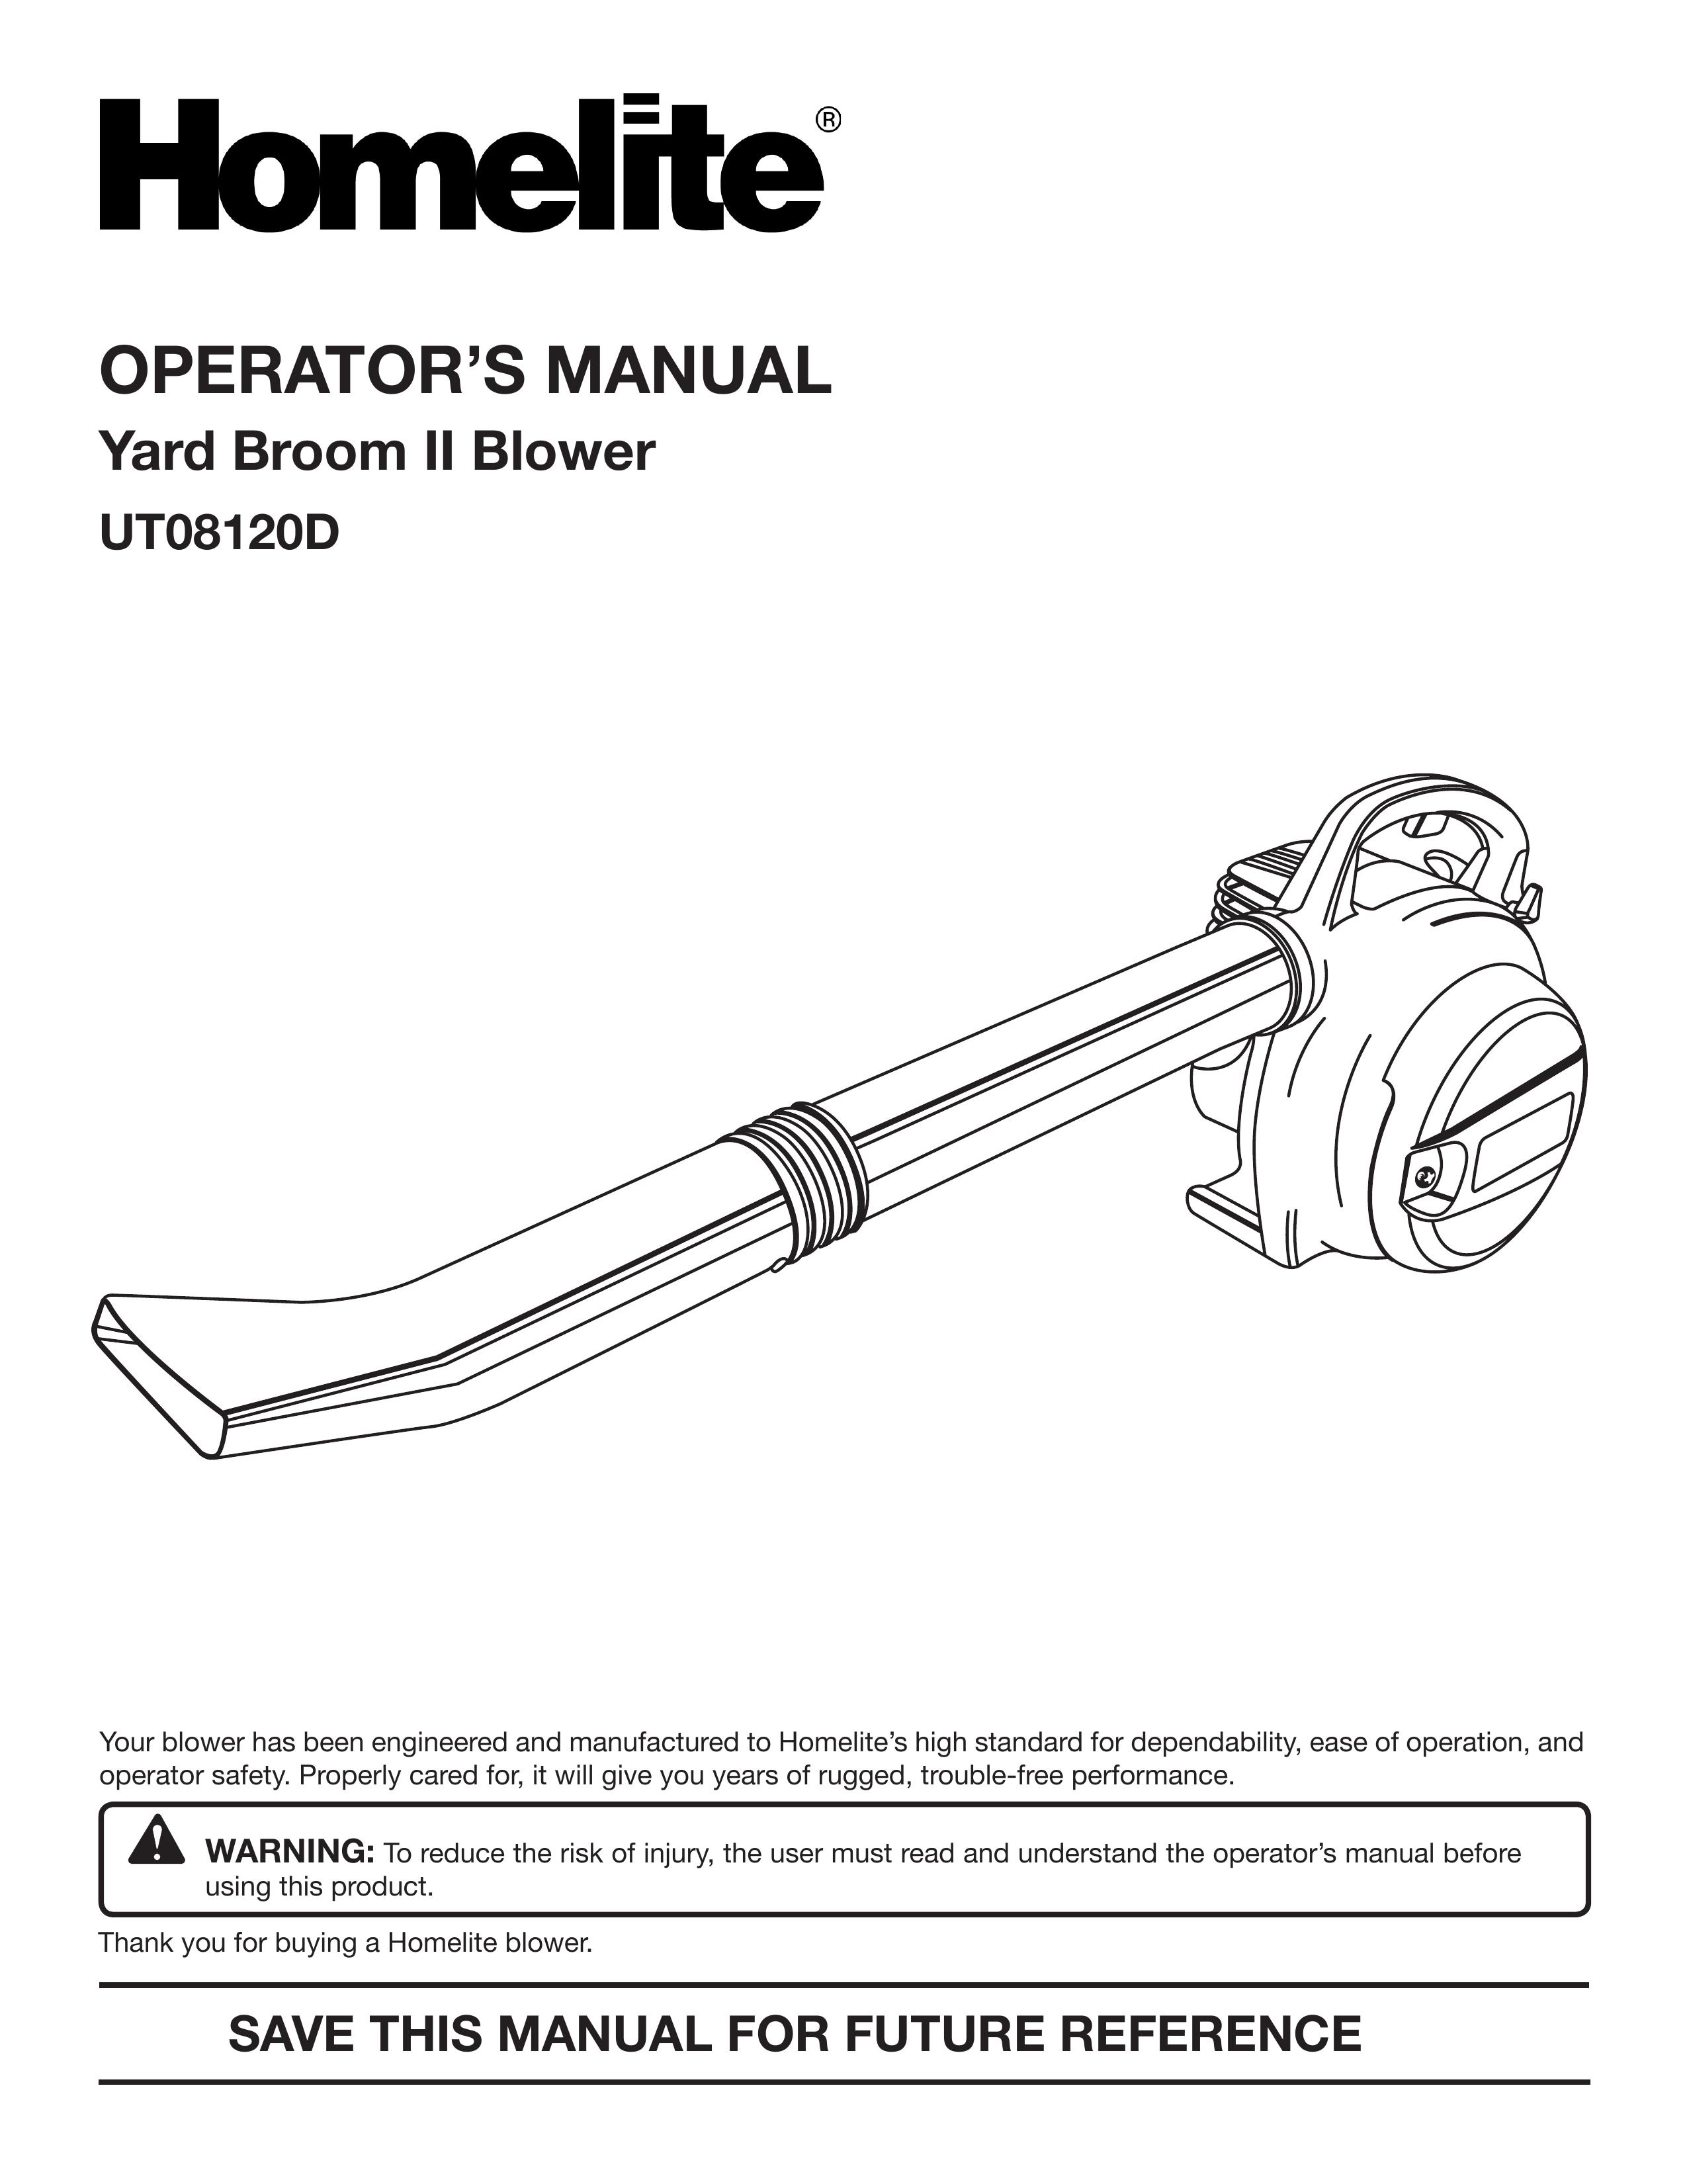 Homelite UT08120D Blower User Manual